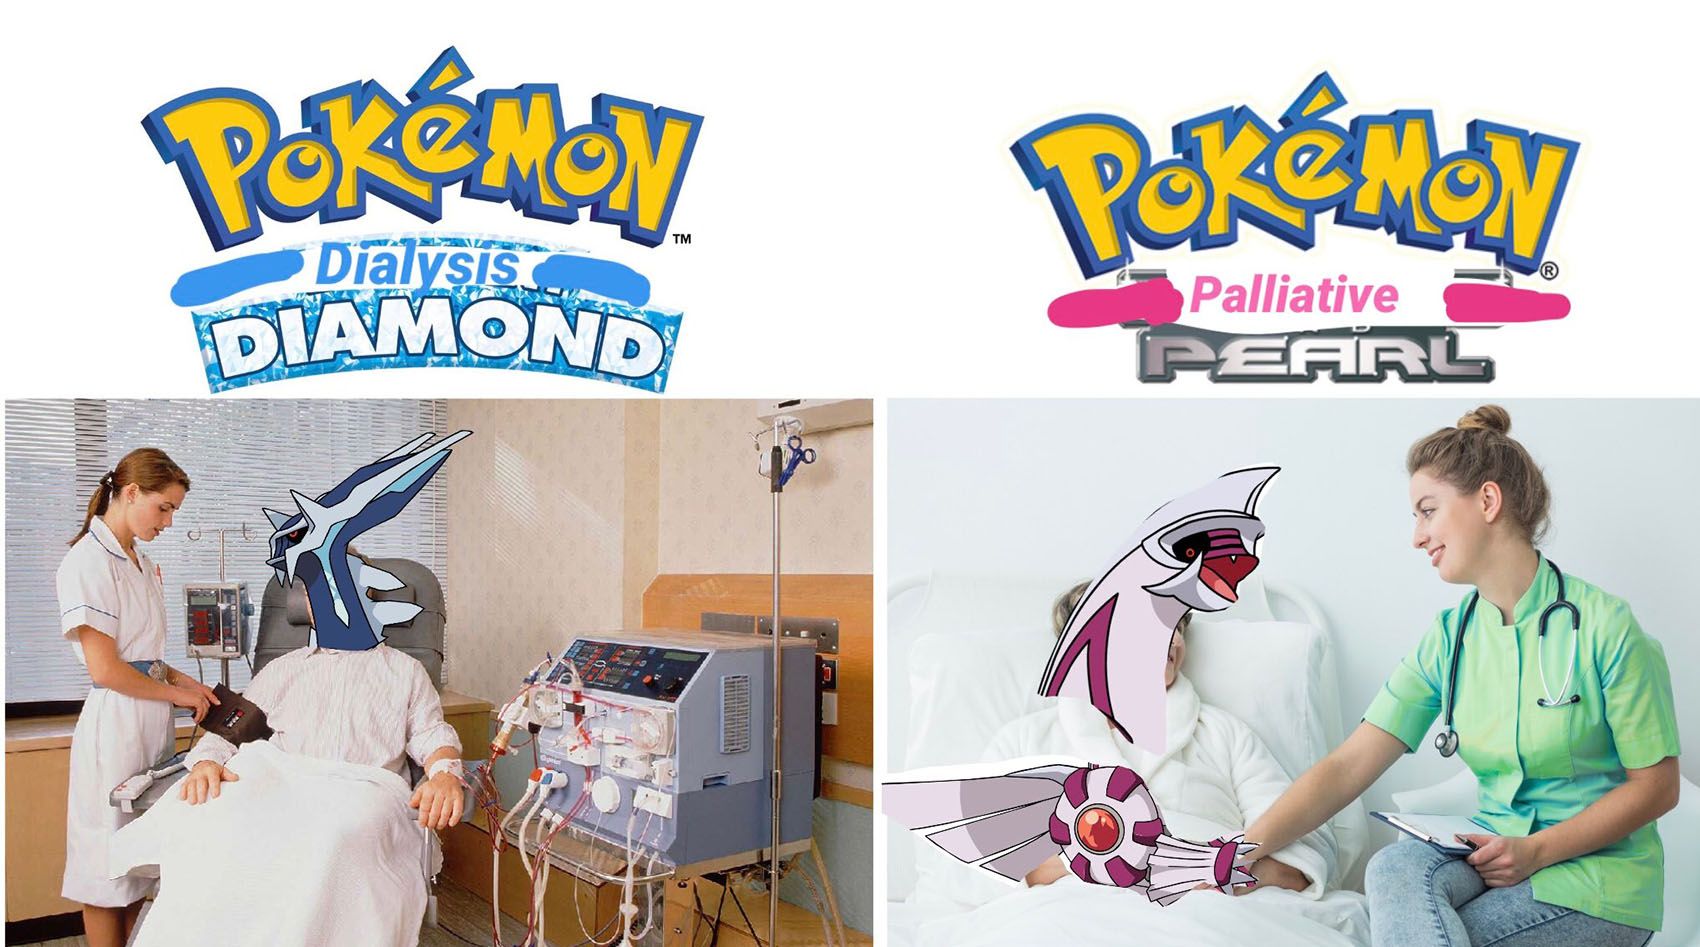 Pokemon Dialysis Diamond And Pokemon Palliative Pearl 